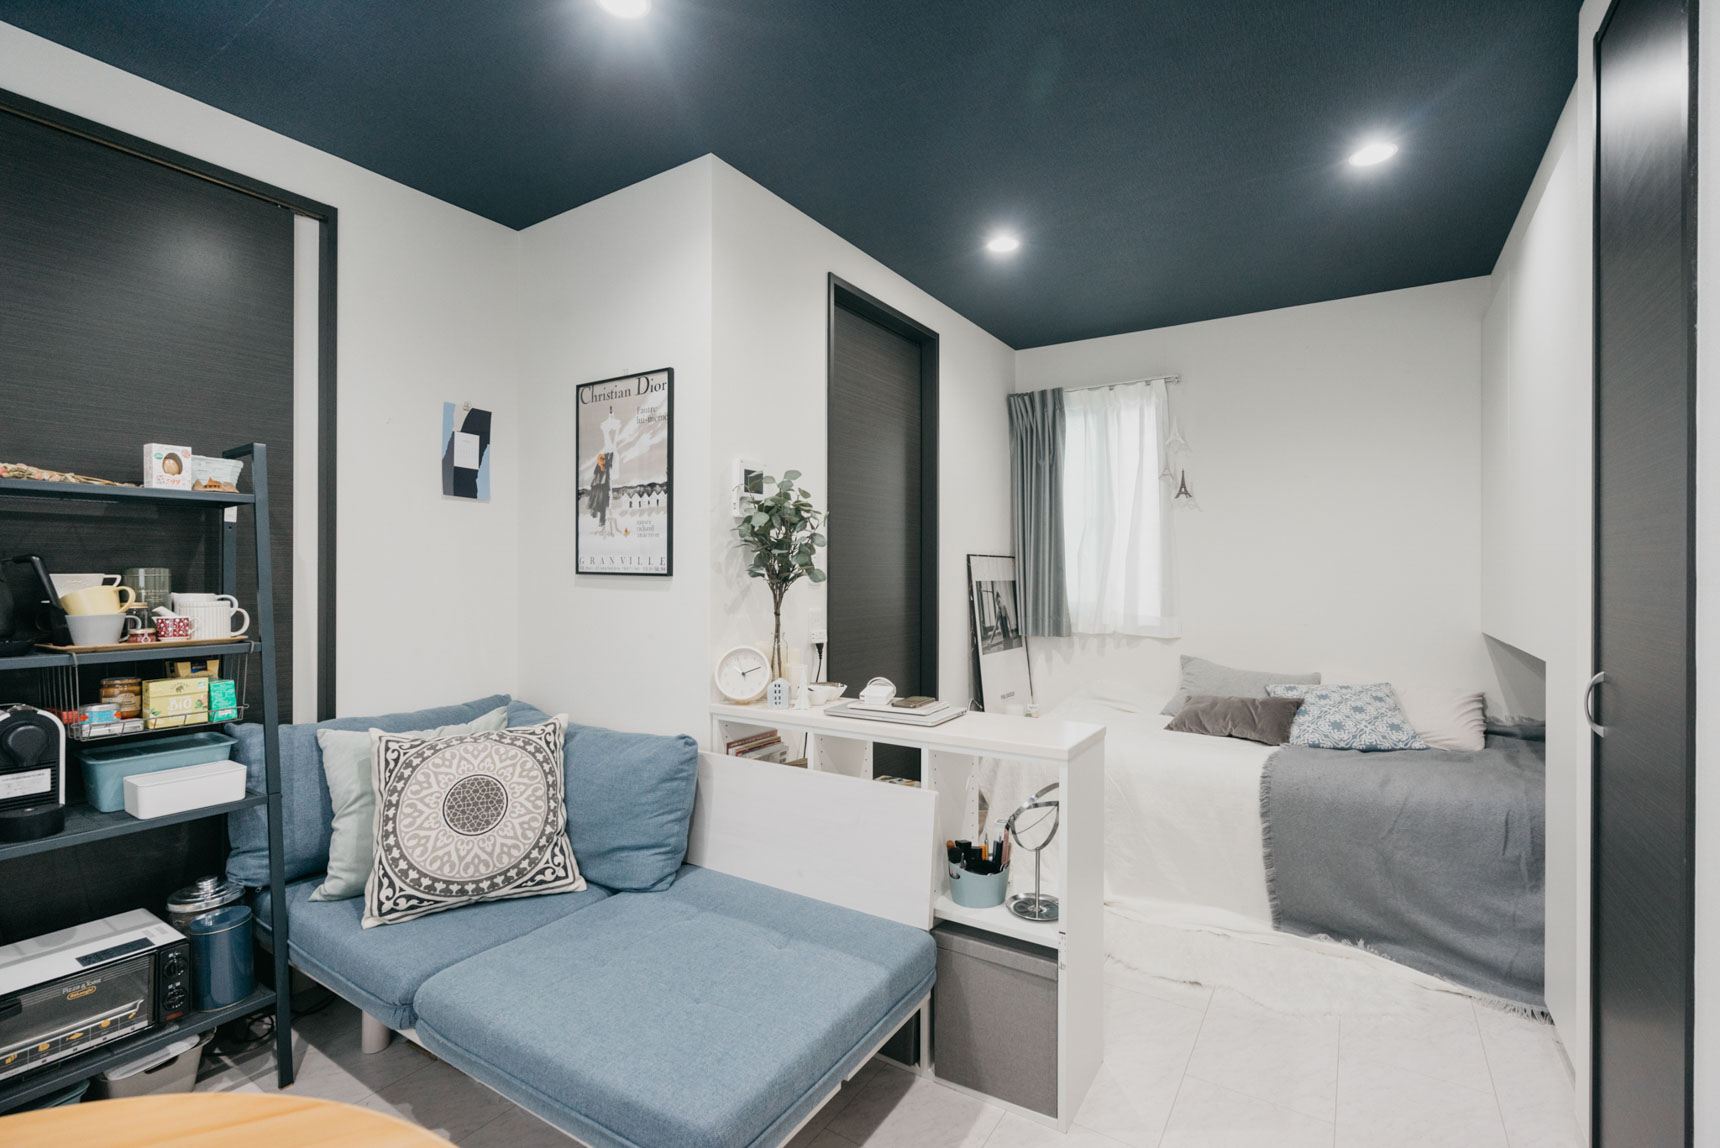 床は白、天井はダークブルー、建具はブラックとメリハリある配色が特徴のデザイナーズのお部屋。合わせる家具も、ブルーやグレーを選んだことで全体に調和し整った雰囲気のお部屋に。